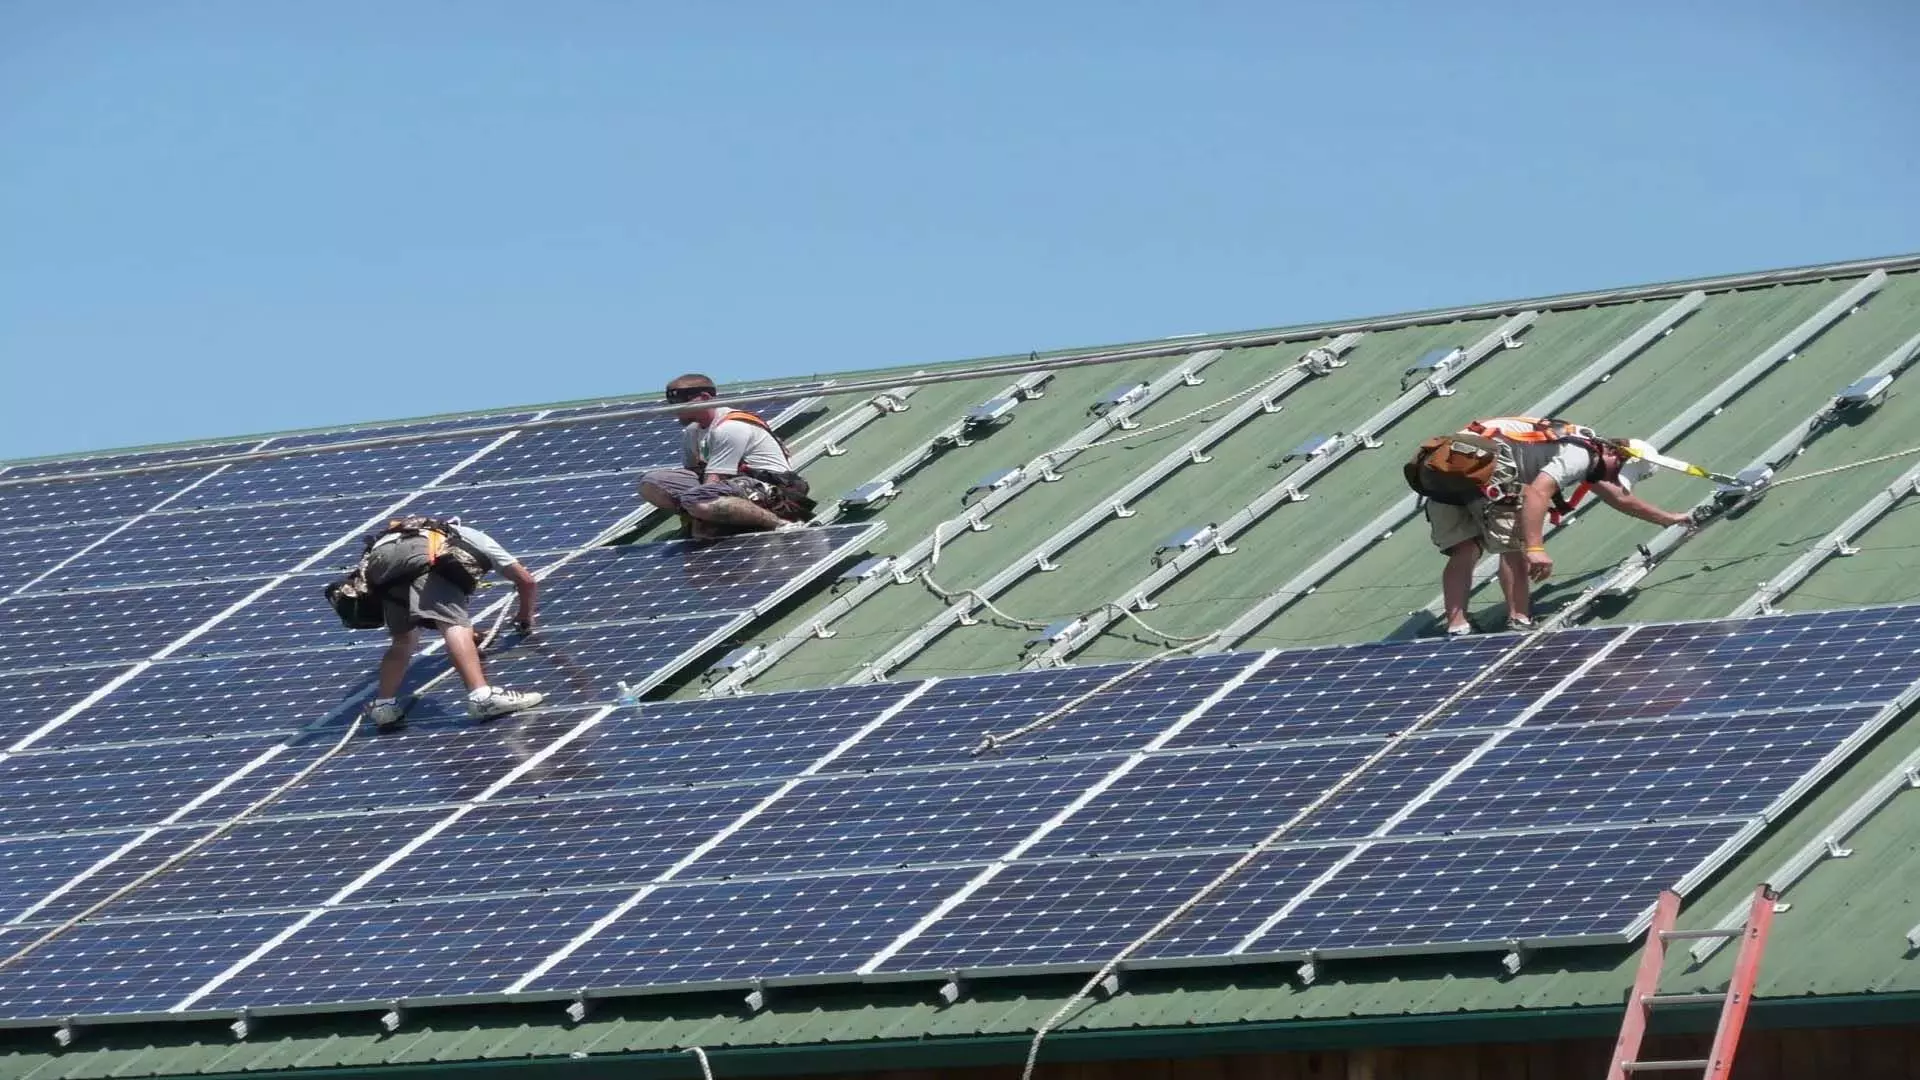 2838 government भवनों को 63 मेगावाट क्षमता सौर ऊर्जा से सुसज्जित किया जाएगा